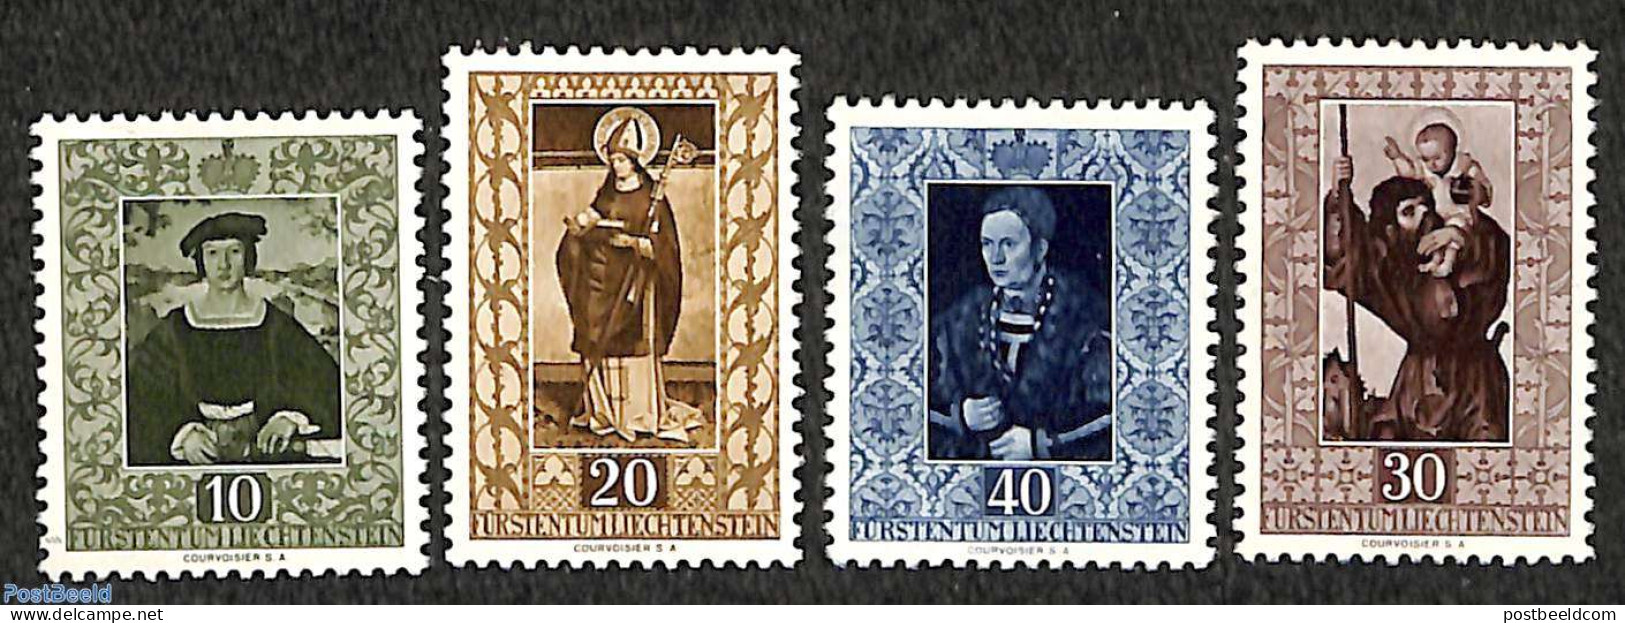 Liechtenstein 1953 Paintings 4v, Unused (hinged), Religion - Saint Nicholas - Art - Paintings - Unused Stamps